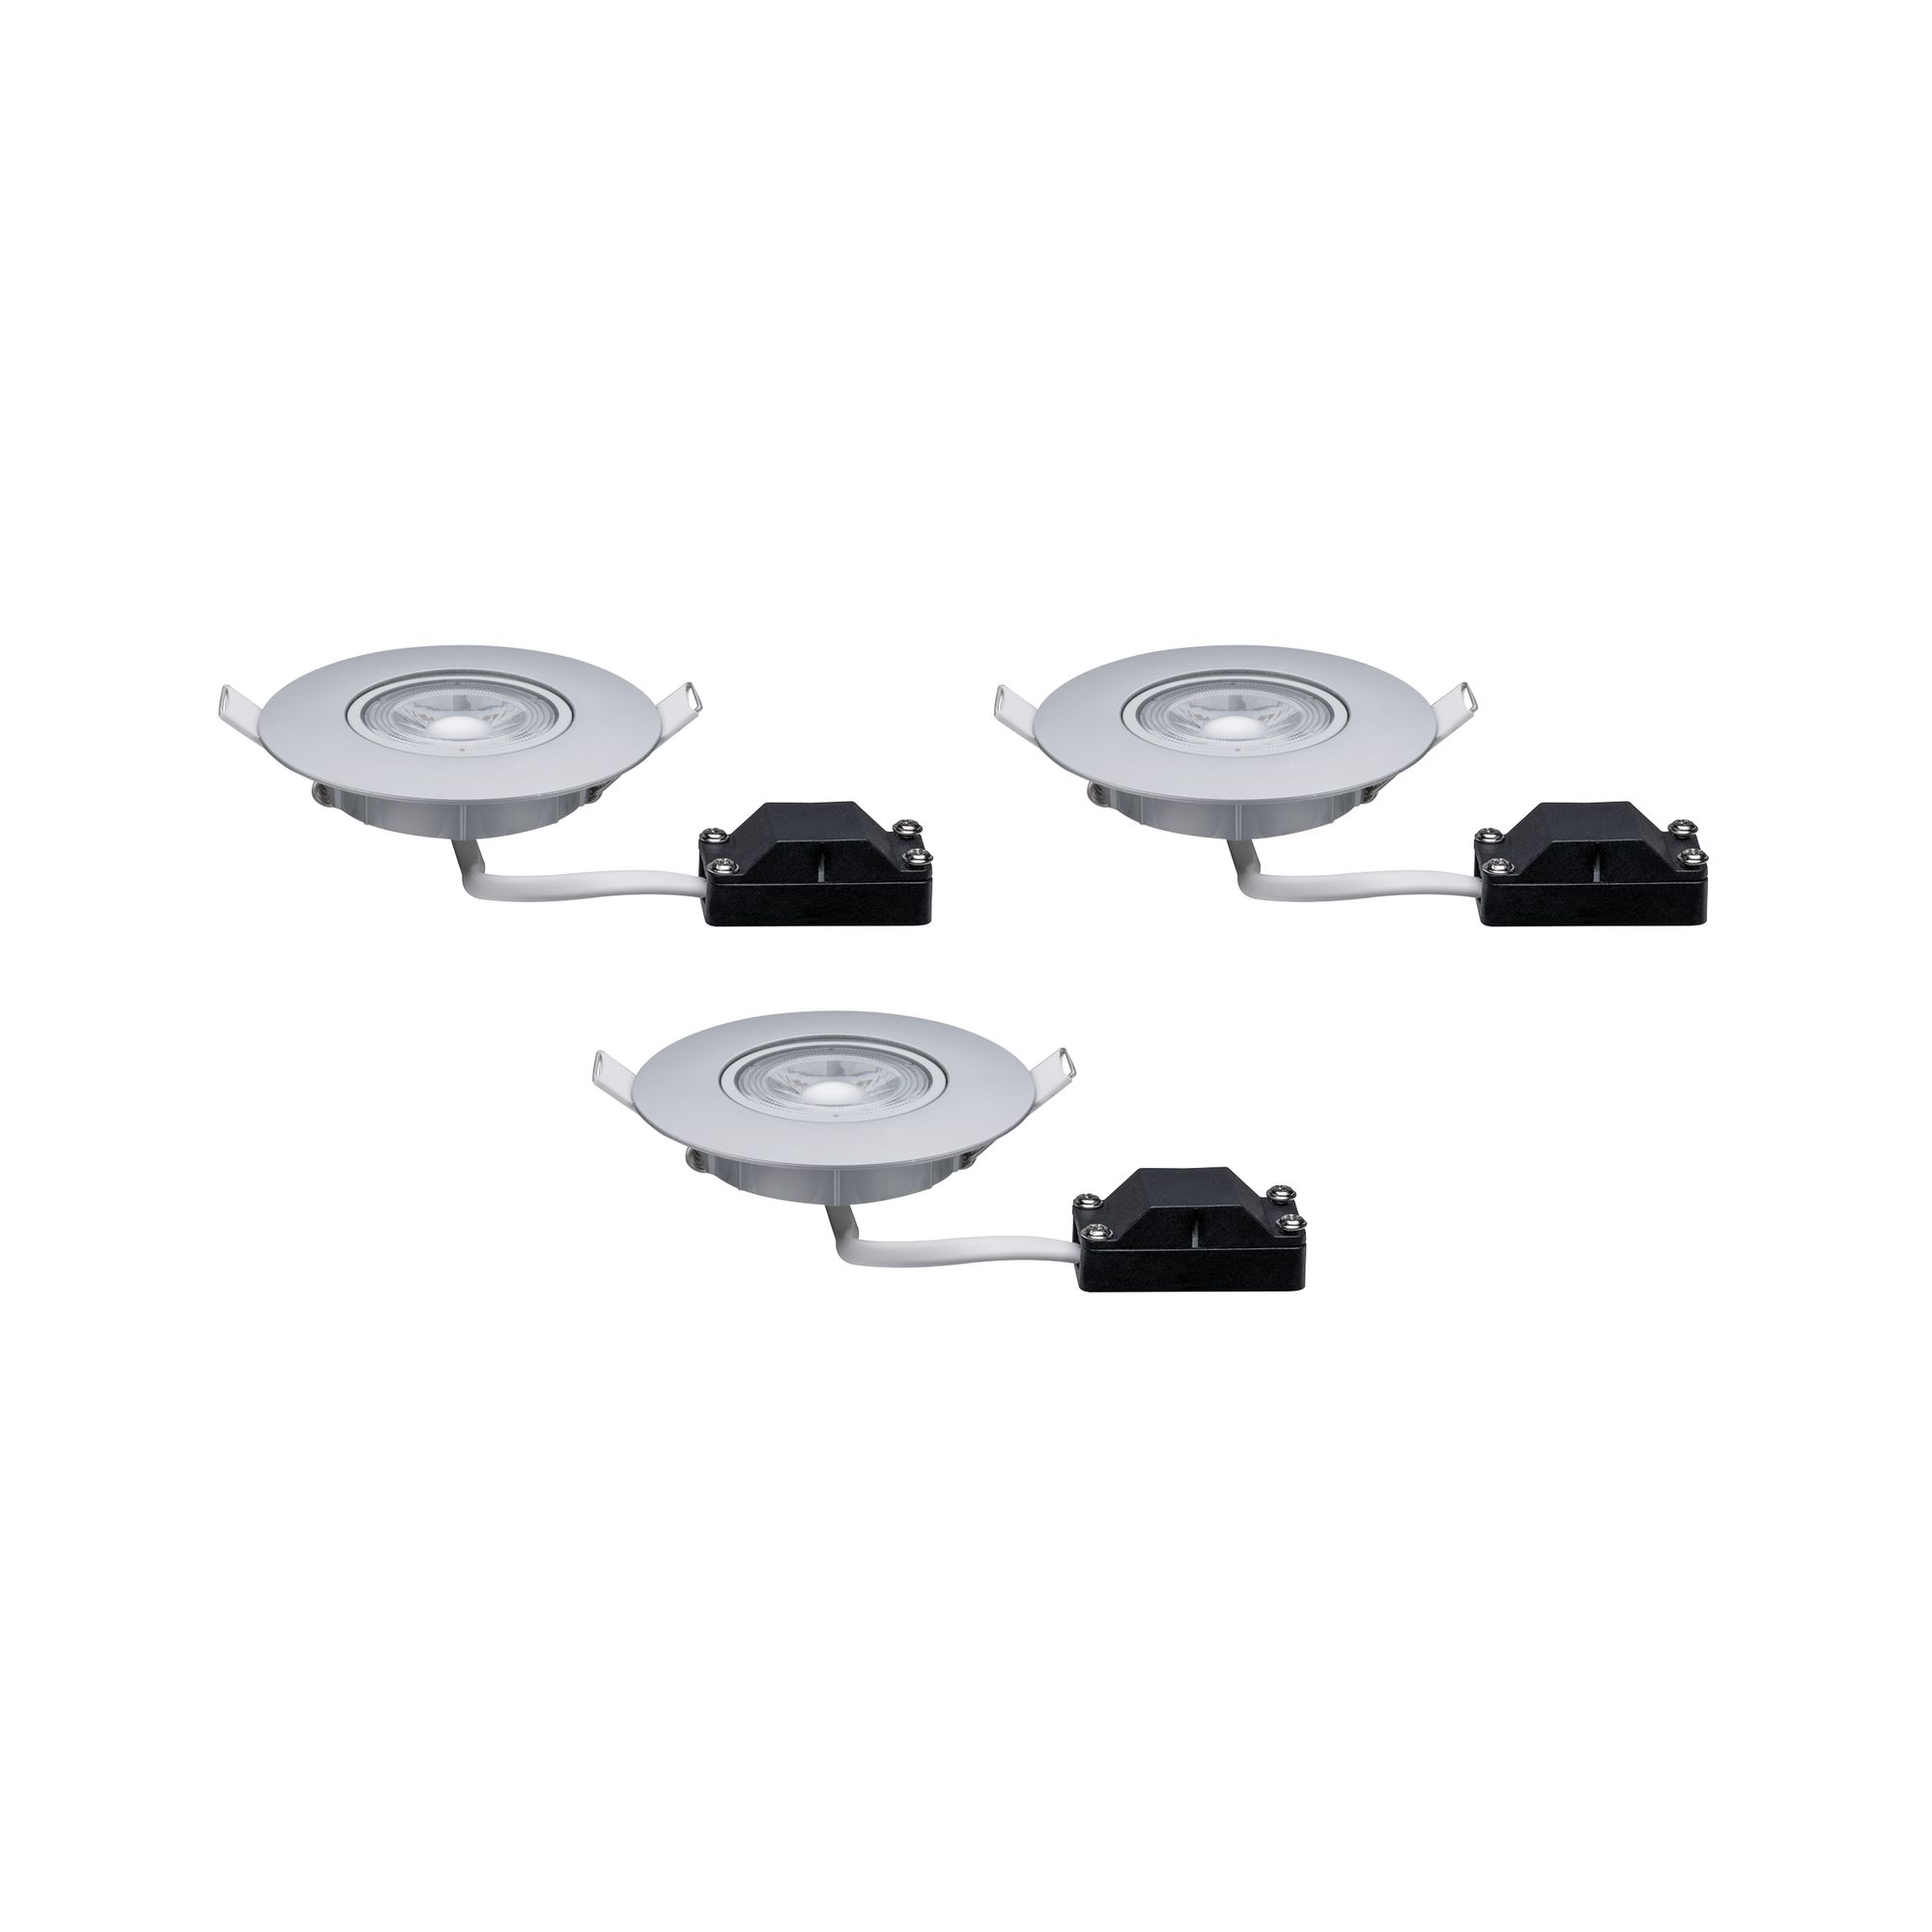 LED-Einbauleuchte weiß 460 lm schwenkbar, 3er-Set + product picture